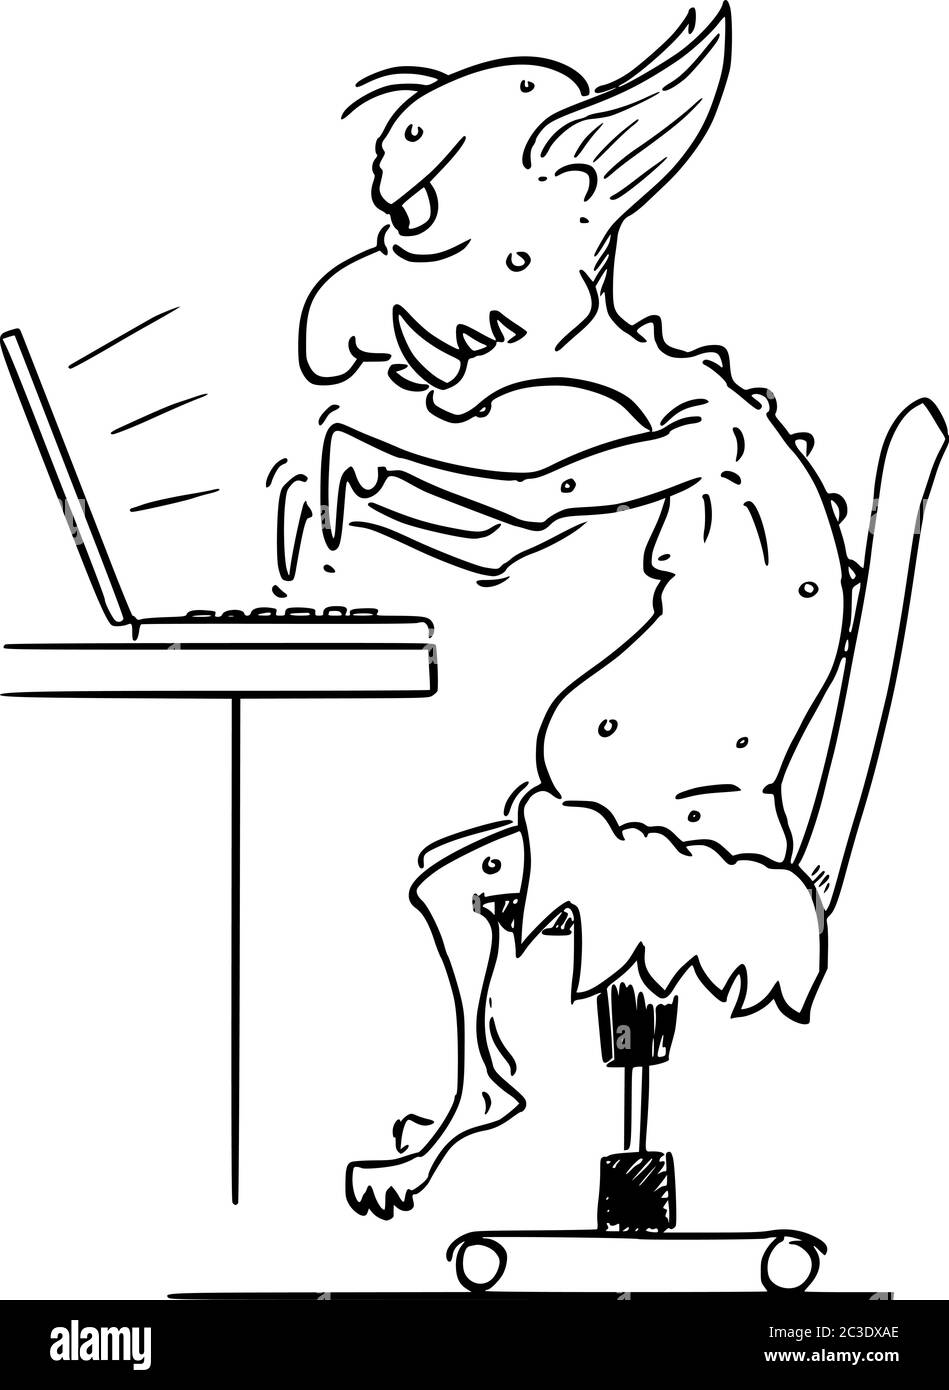 Vector Cartoon Stick figura dibujo conceptual ilustración de troll virtual de Internet asaltar a otros usuarios en línea en guerras de llama escribiendo en la computadora. Ilustración del Vector